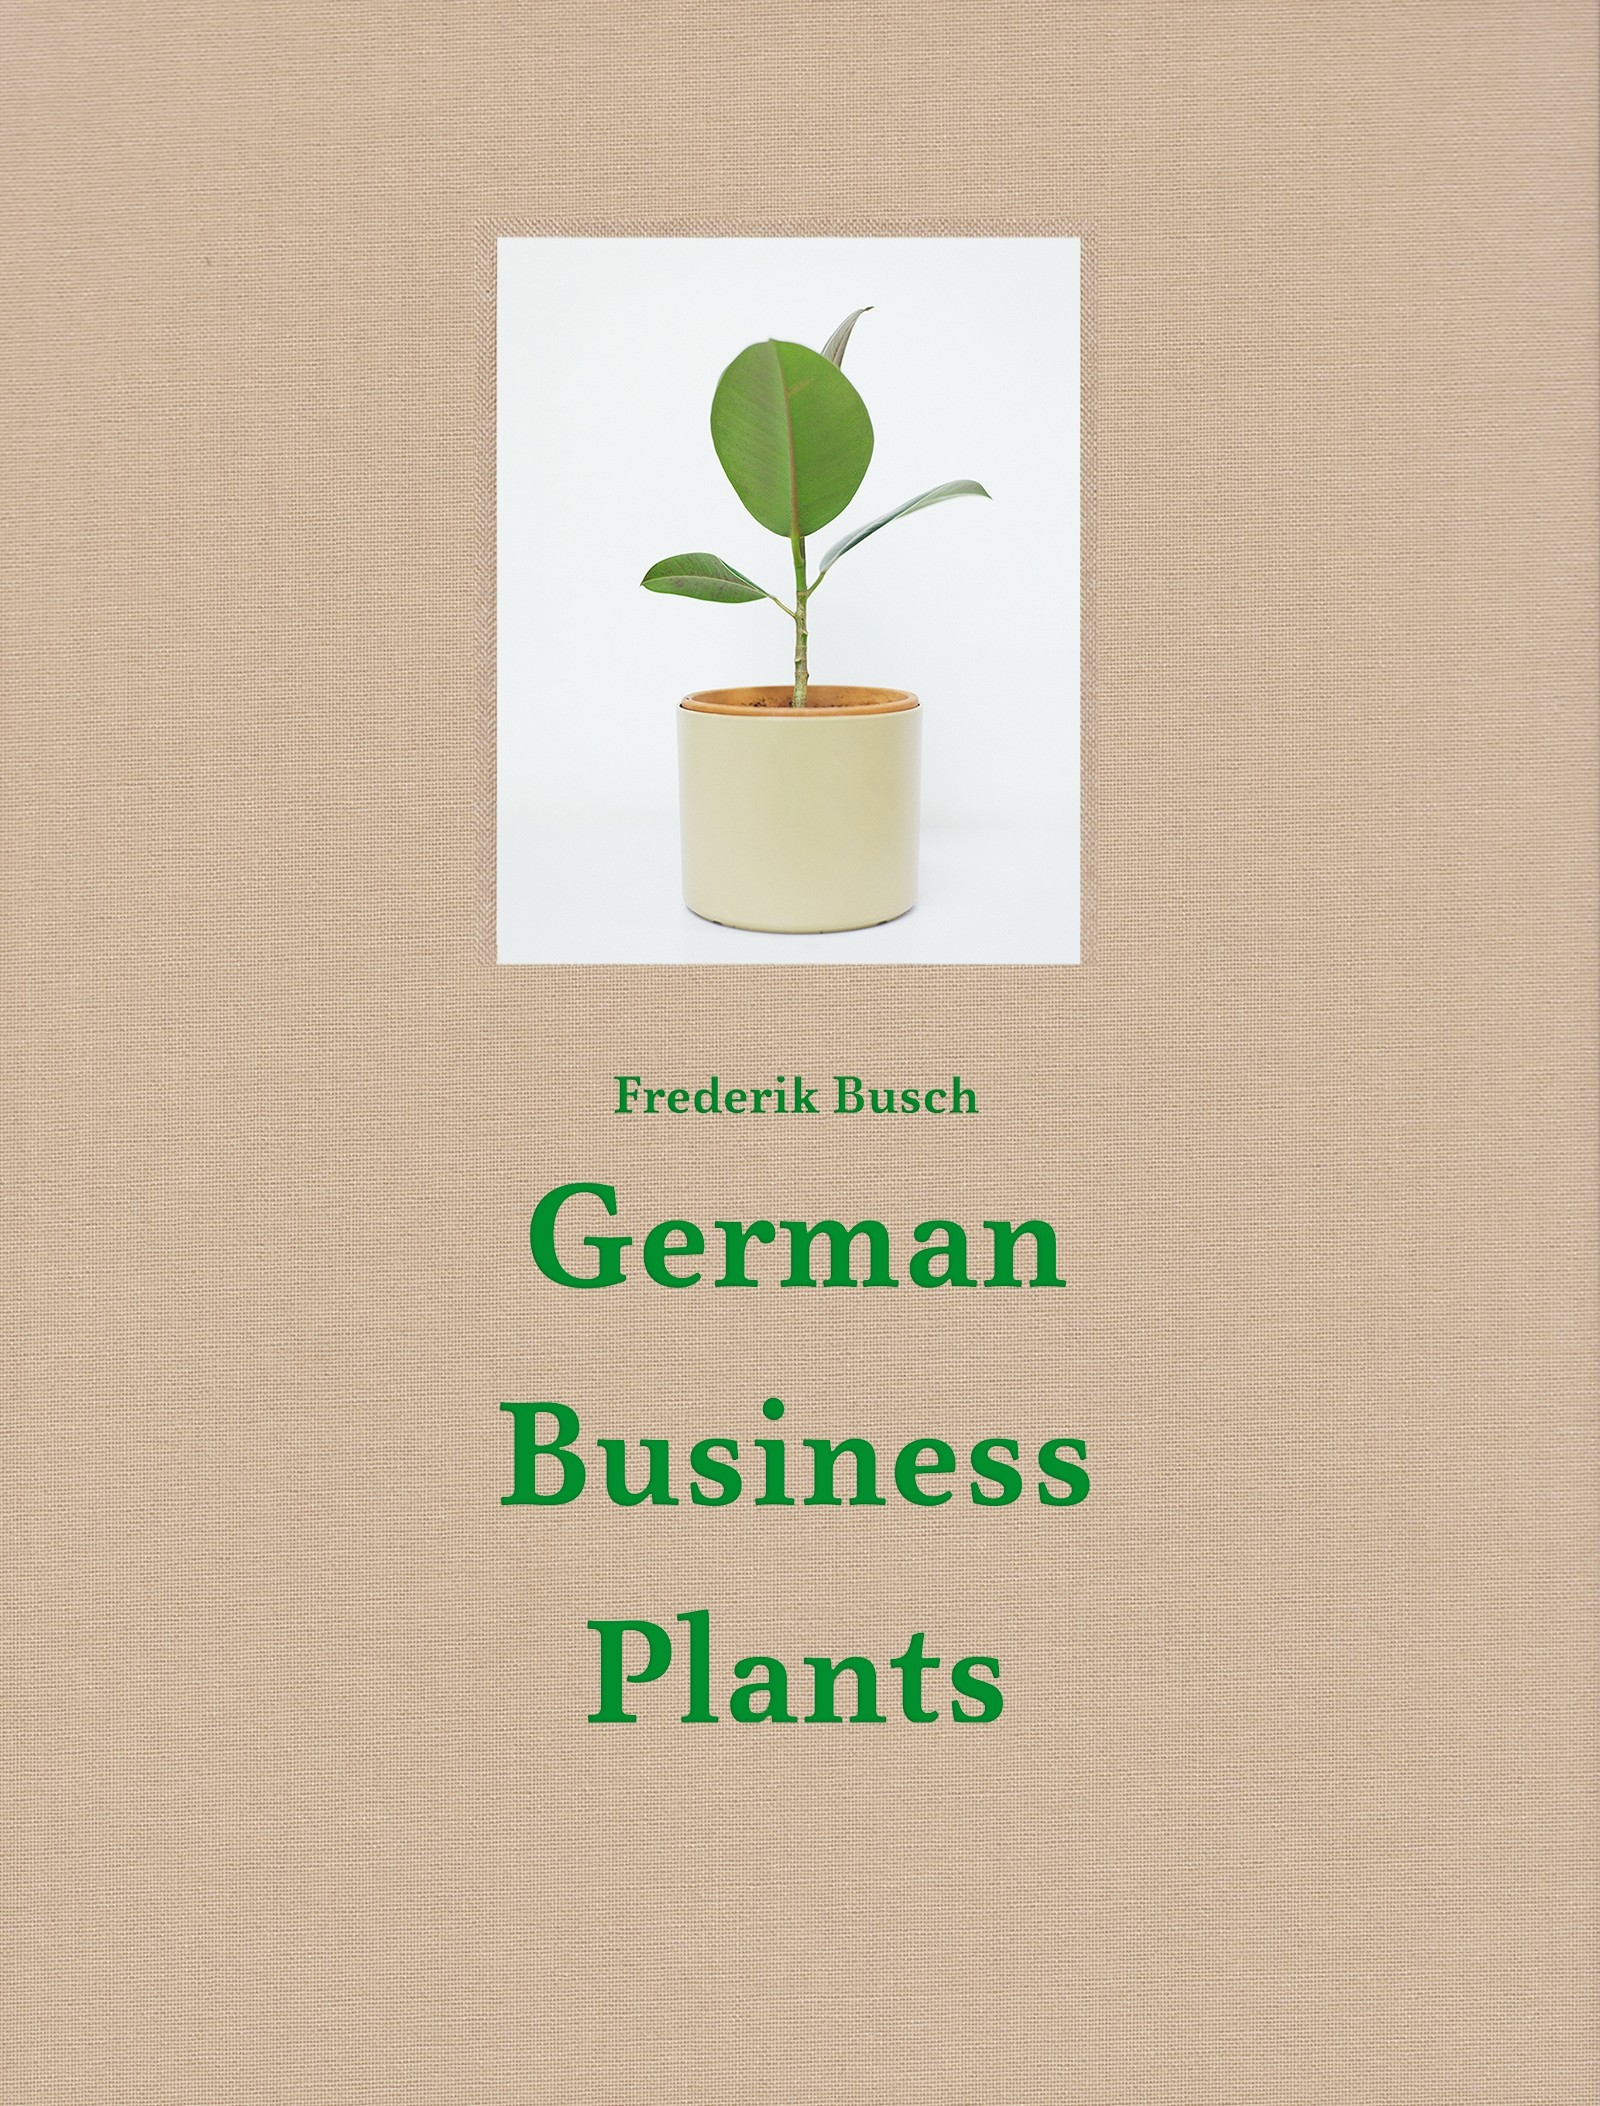 Frederik Busch German Business Plants 